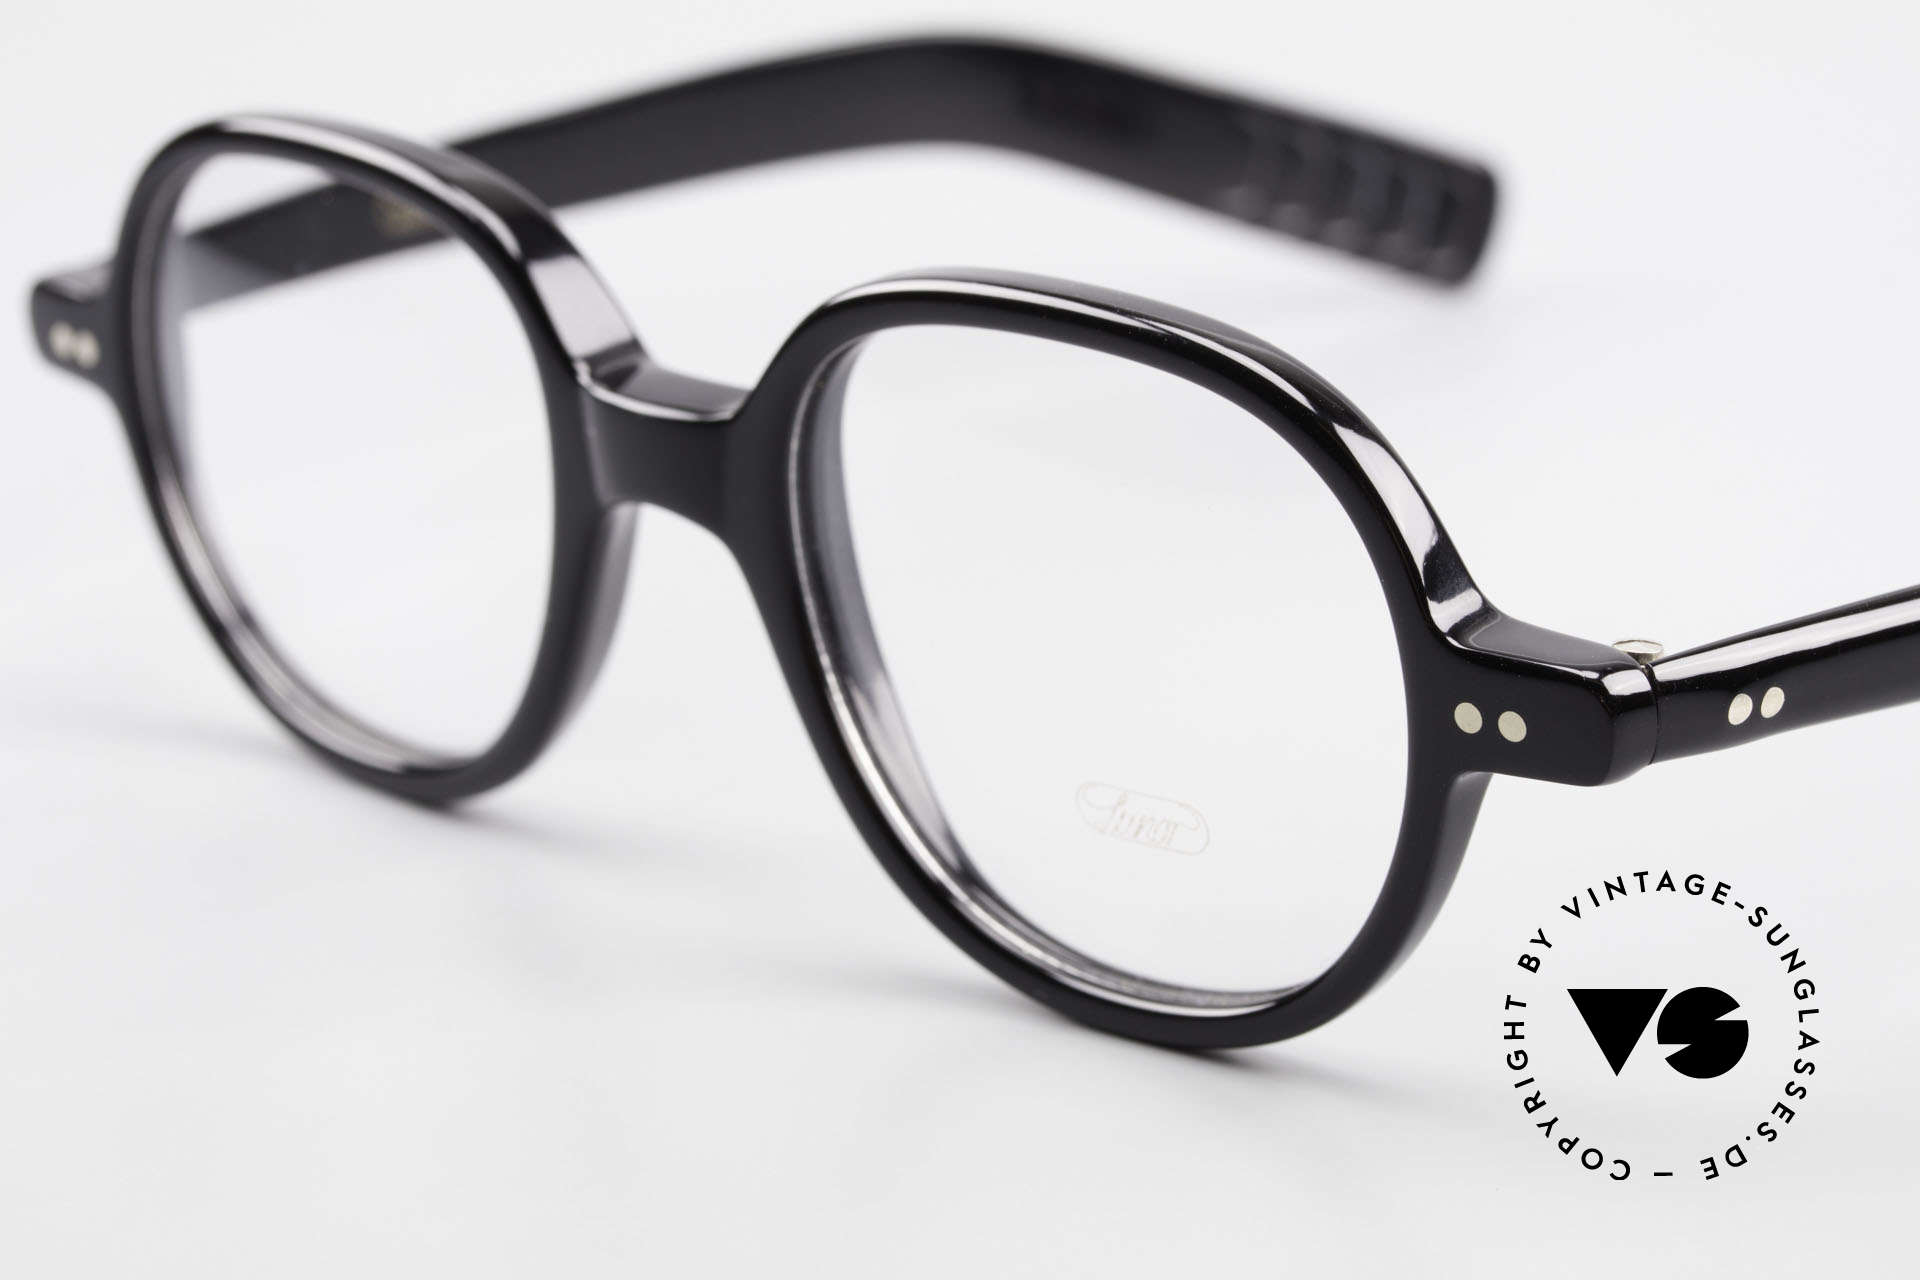 Lunor A50 Runde Lunor Acetatbrille Panto, 100% made in Germany, handpoliert, ein Klassiker!, Passend für Herren und Damen